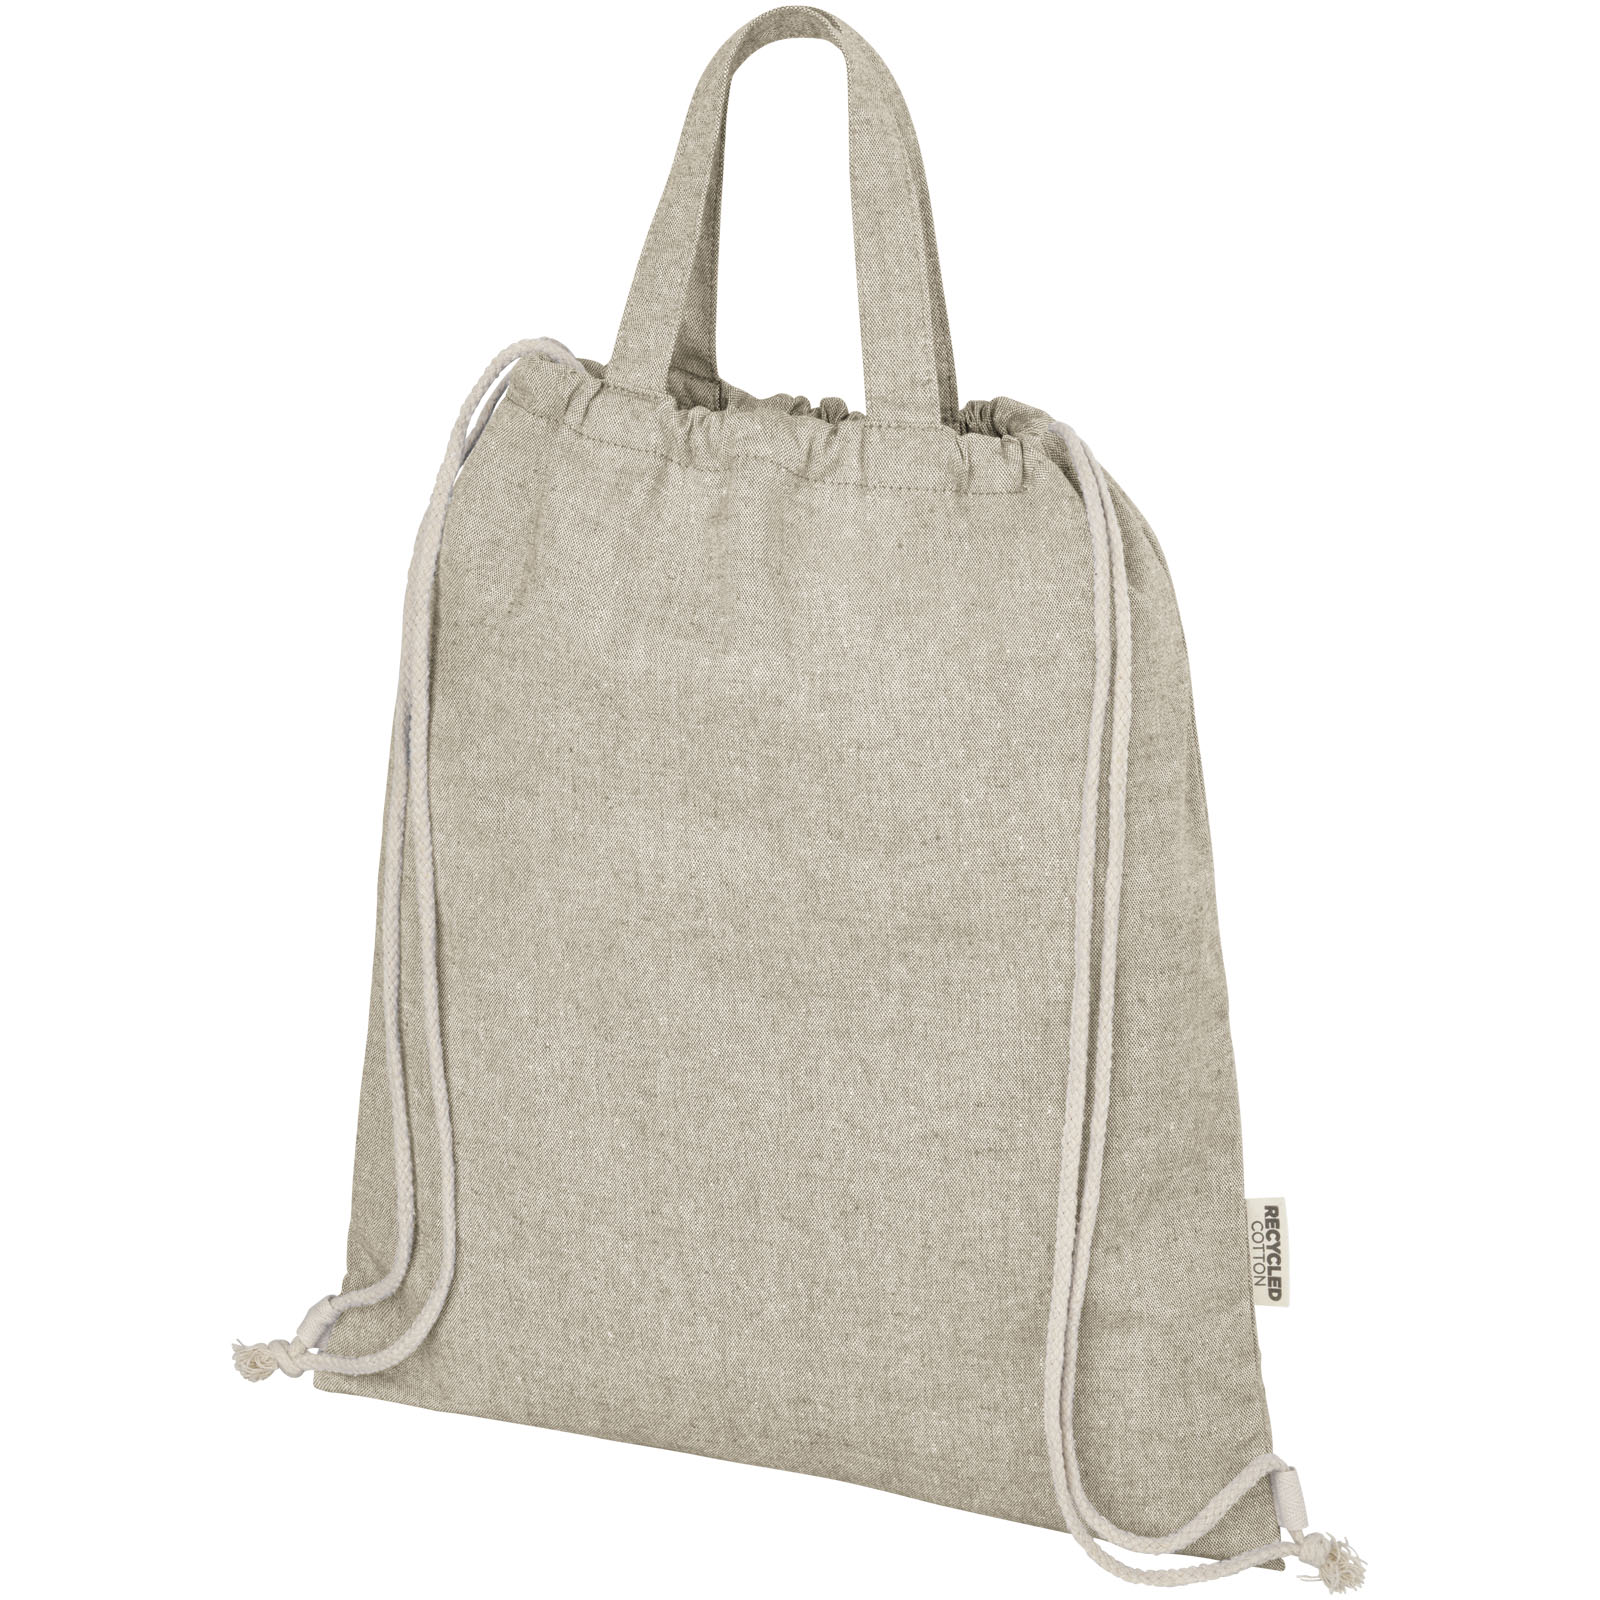 Advertising Drawstring Bags - Pheebs 150 g/m² Aware™ drawstring bag - 3